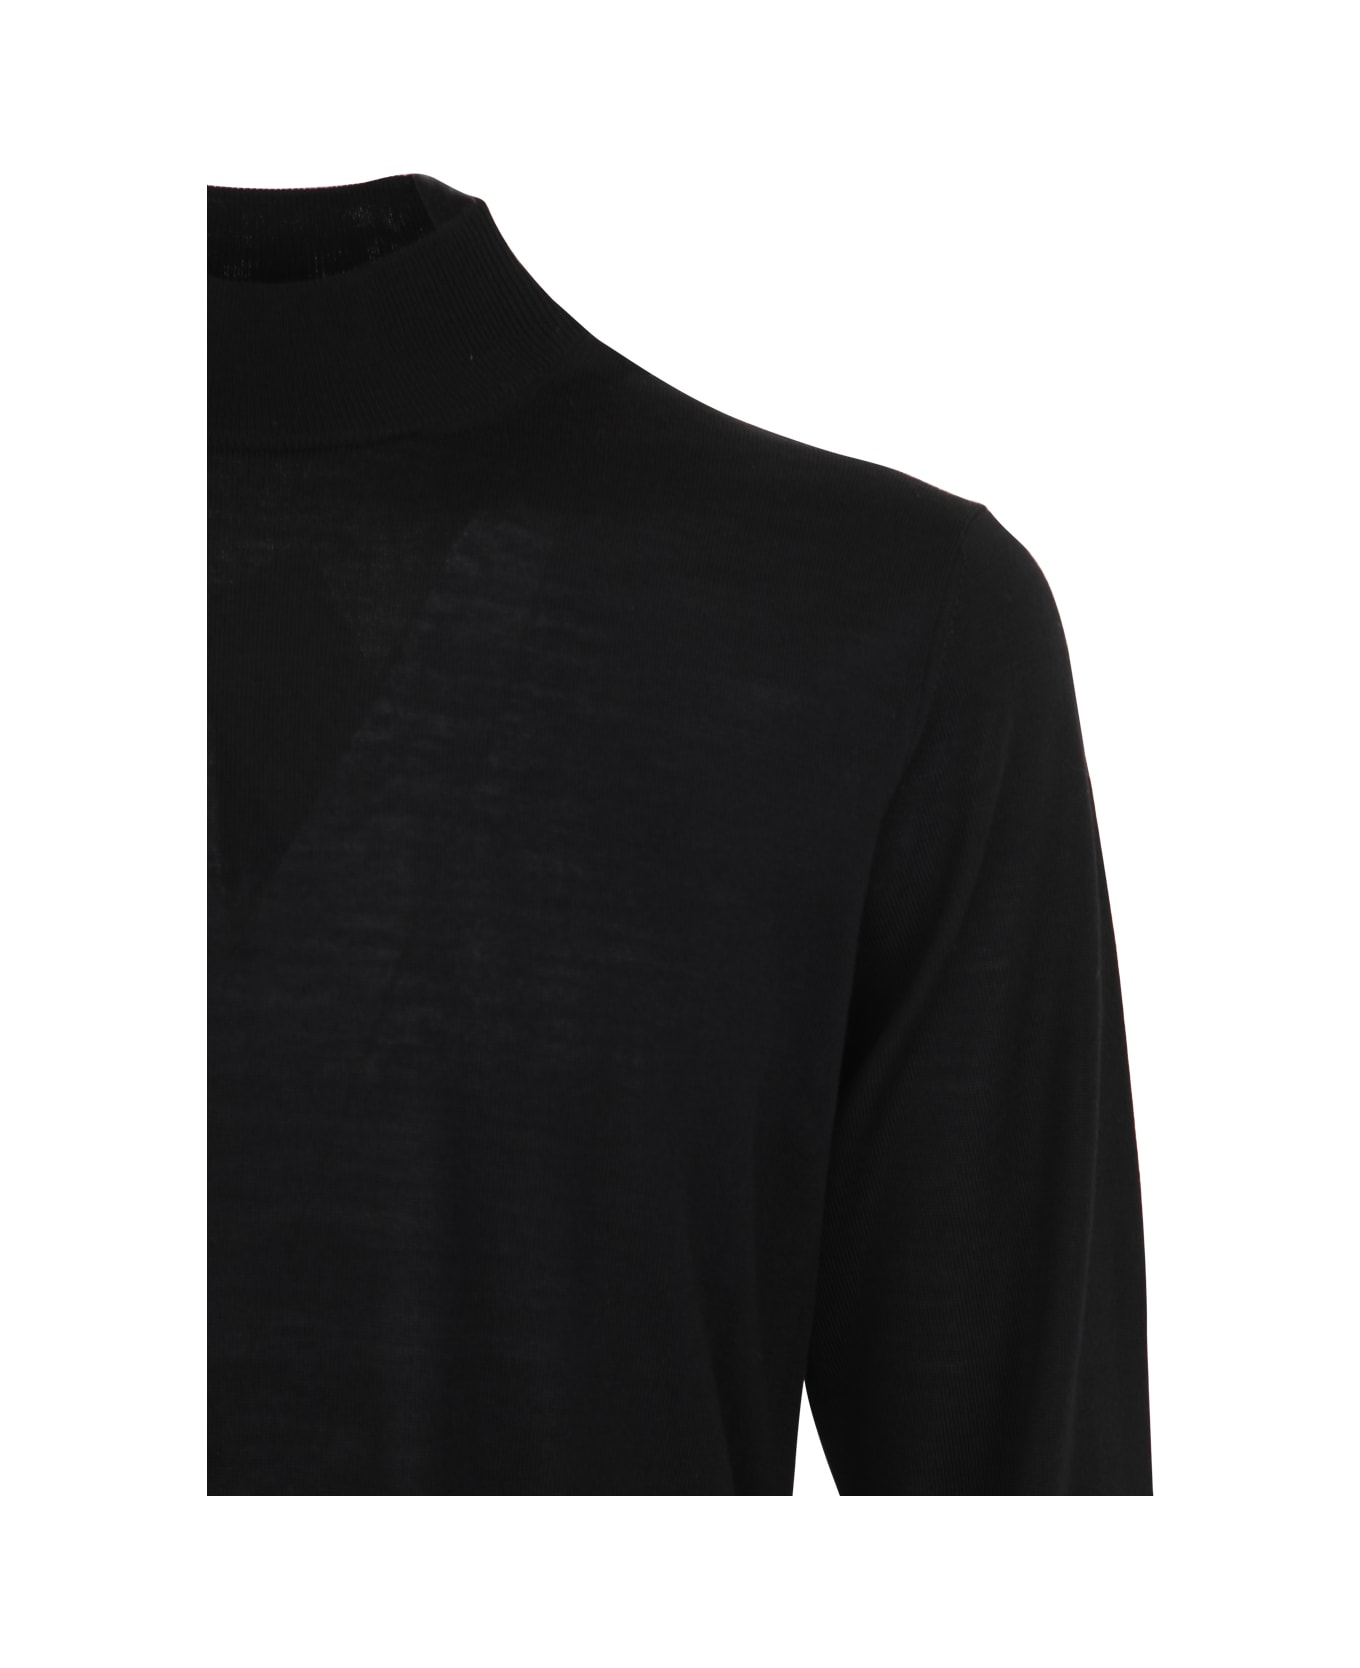 Filippo De Laurentiis Royal Merino Long Sleeves High Neck Sweater - Black